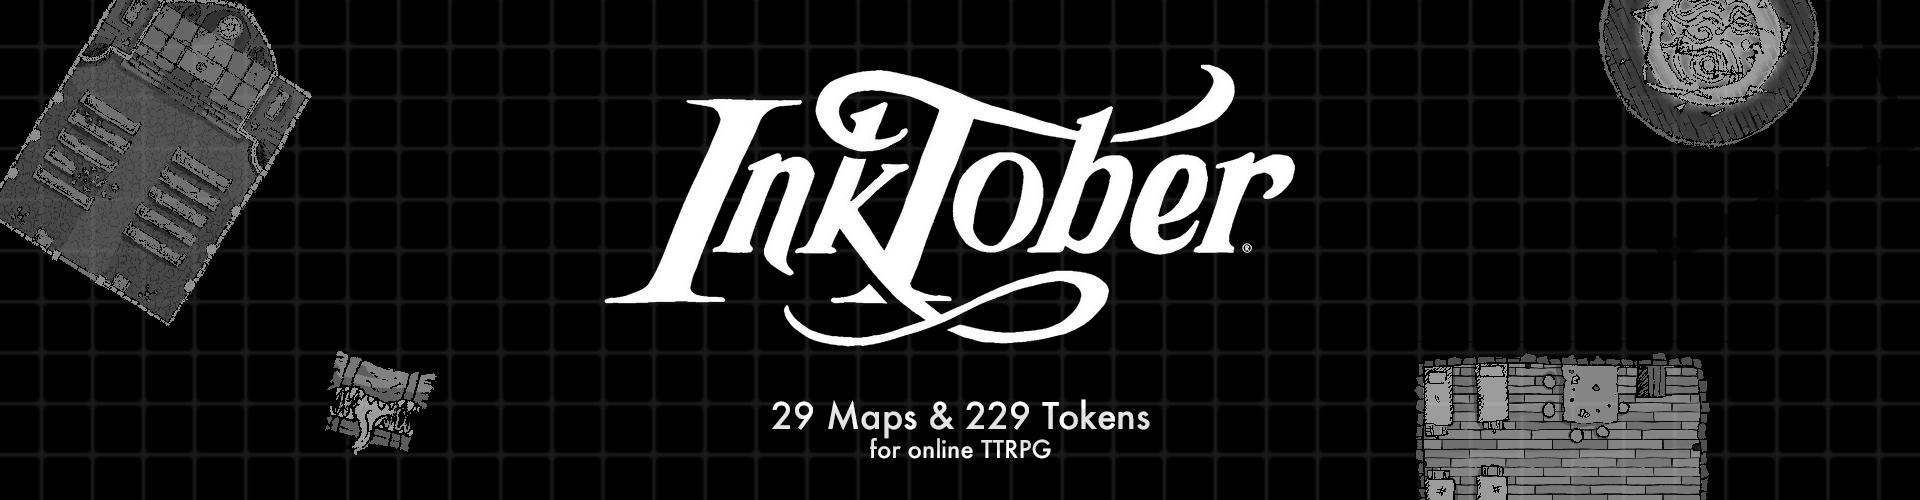 Inktober 2020 Map & Token Pack